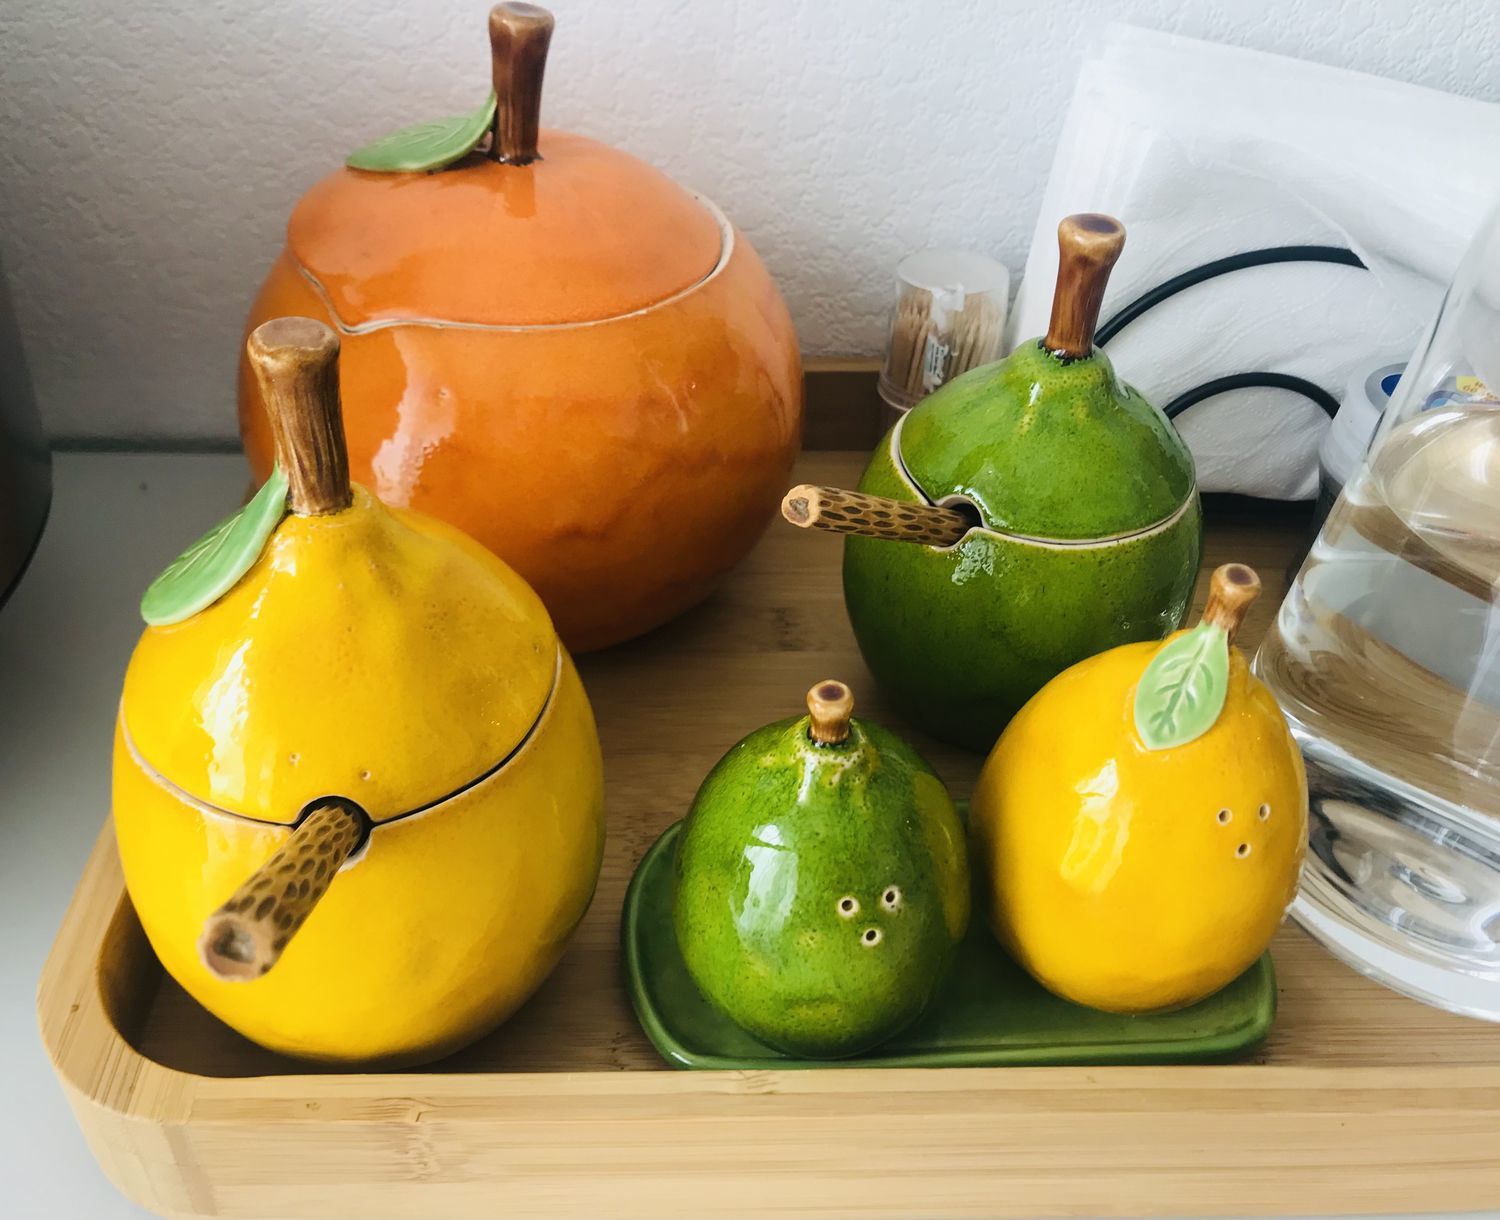 Фото №1 к отзыву покупателя Alisa Gorbacheva о товаре Сахарница - лимон керамический и еще 4 товара